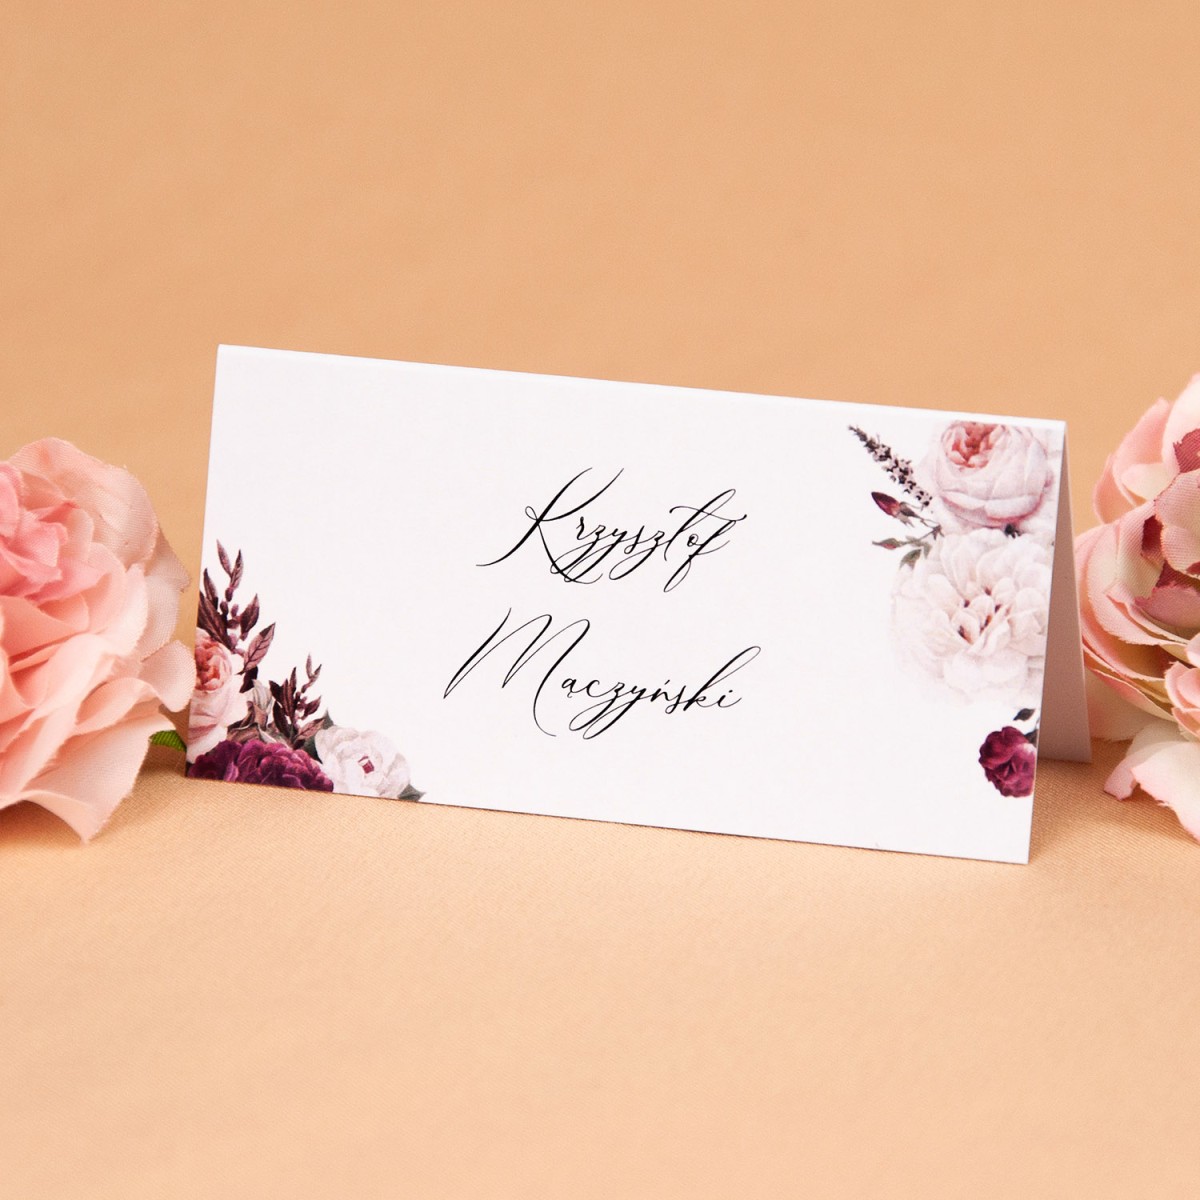 Winietki weselne z białymi i bordowymi kwiatami - Rose & White, Maroon Flowers - PRÓBKA